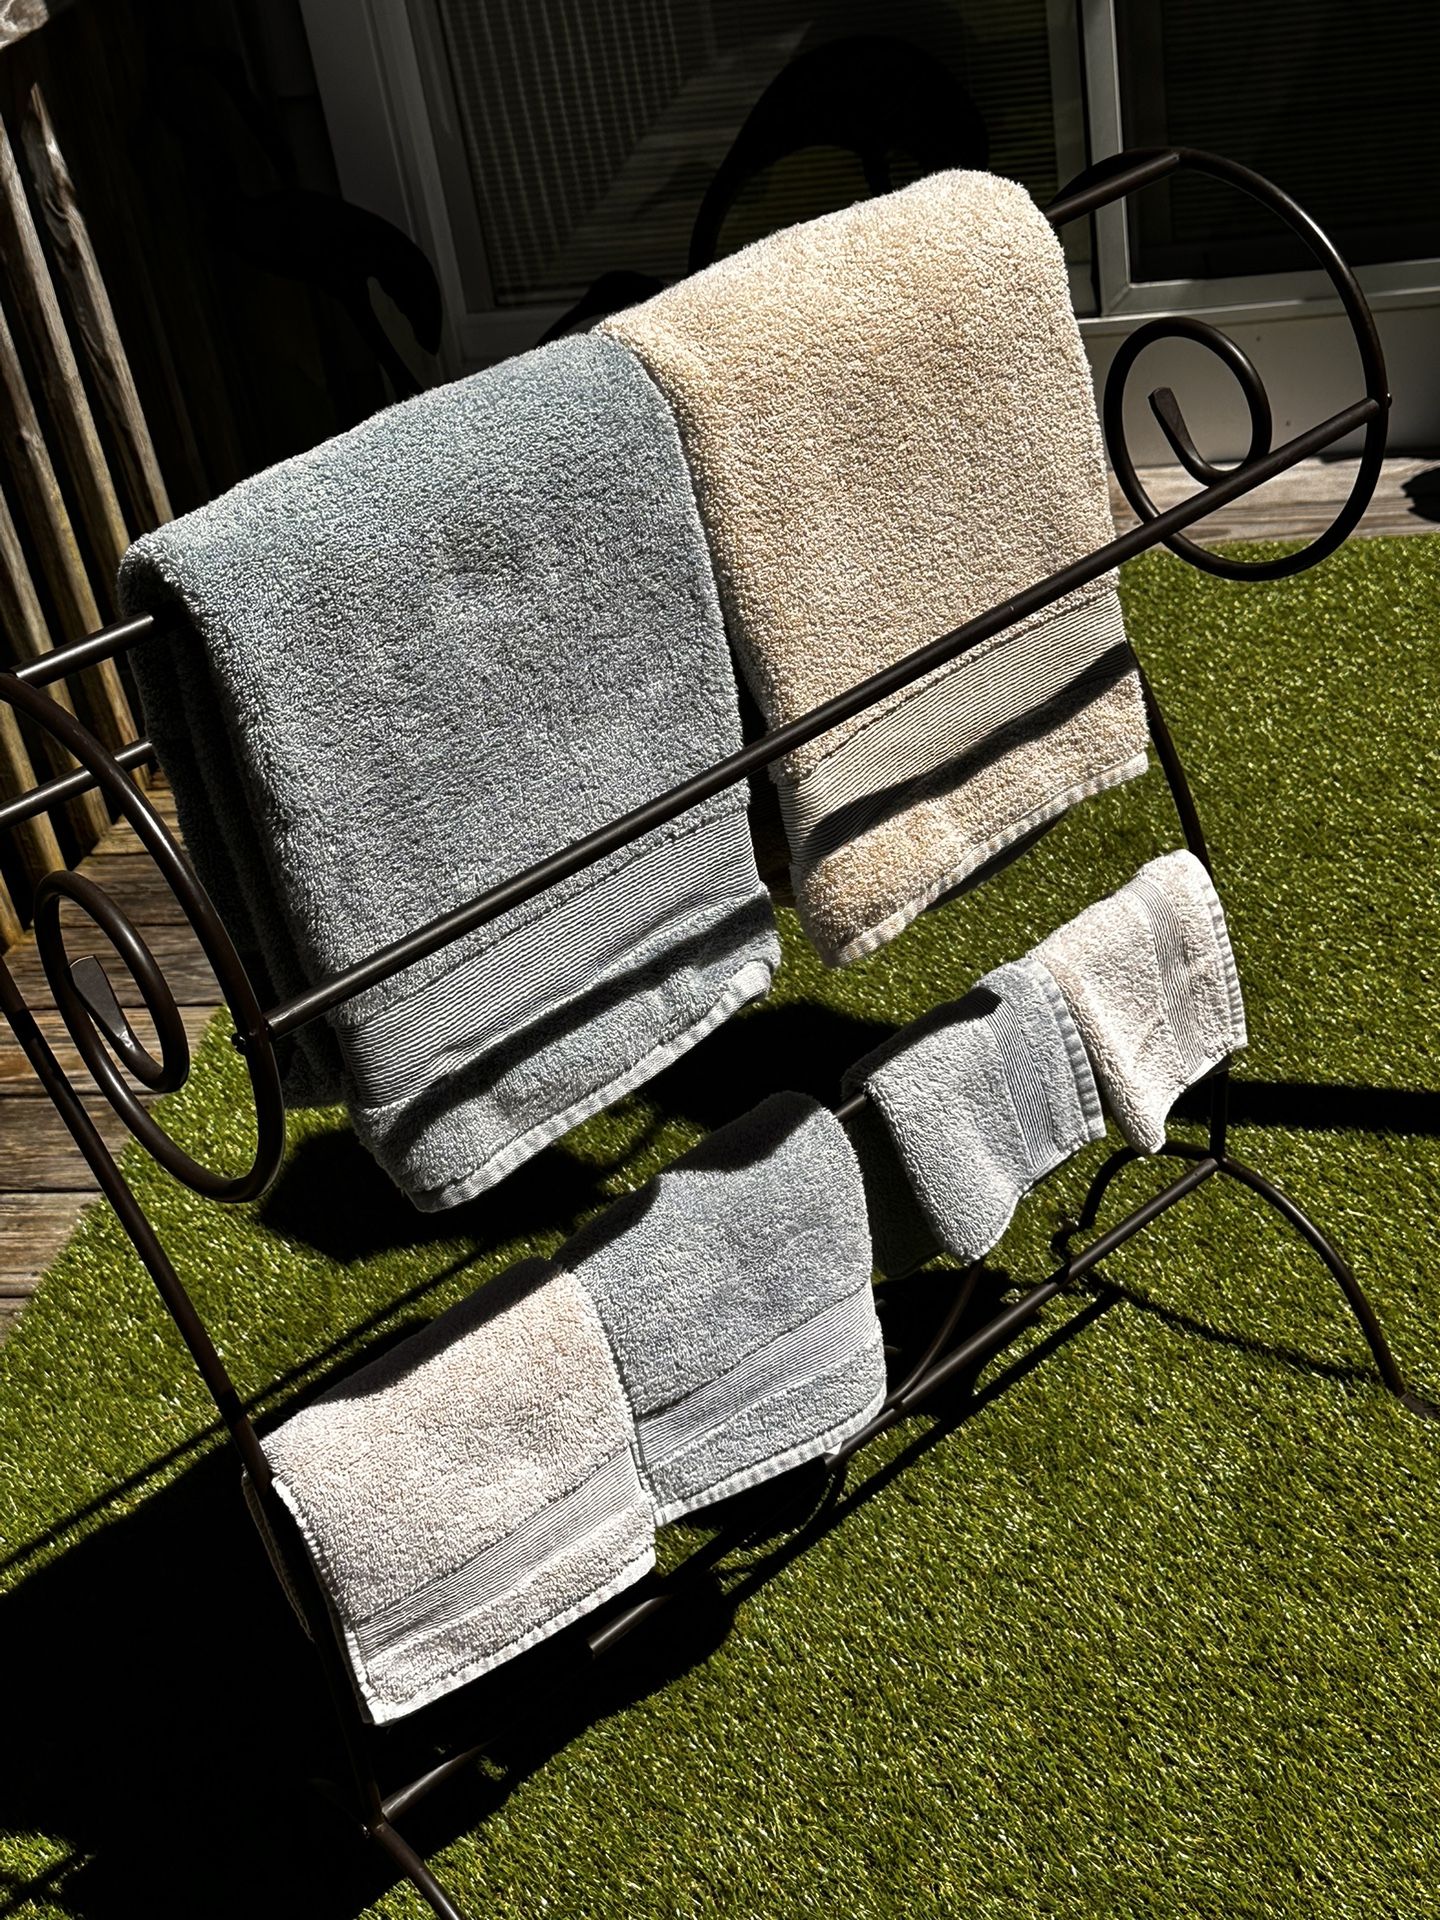  Blanket/Towel Rack